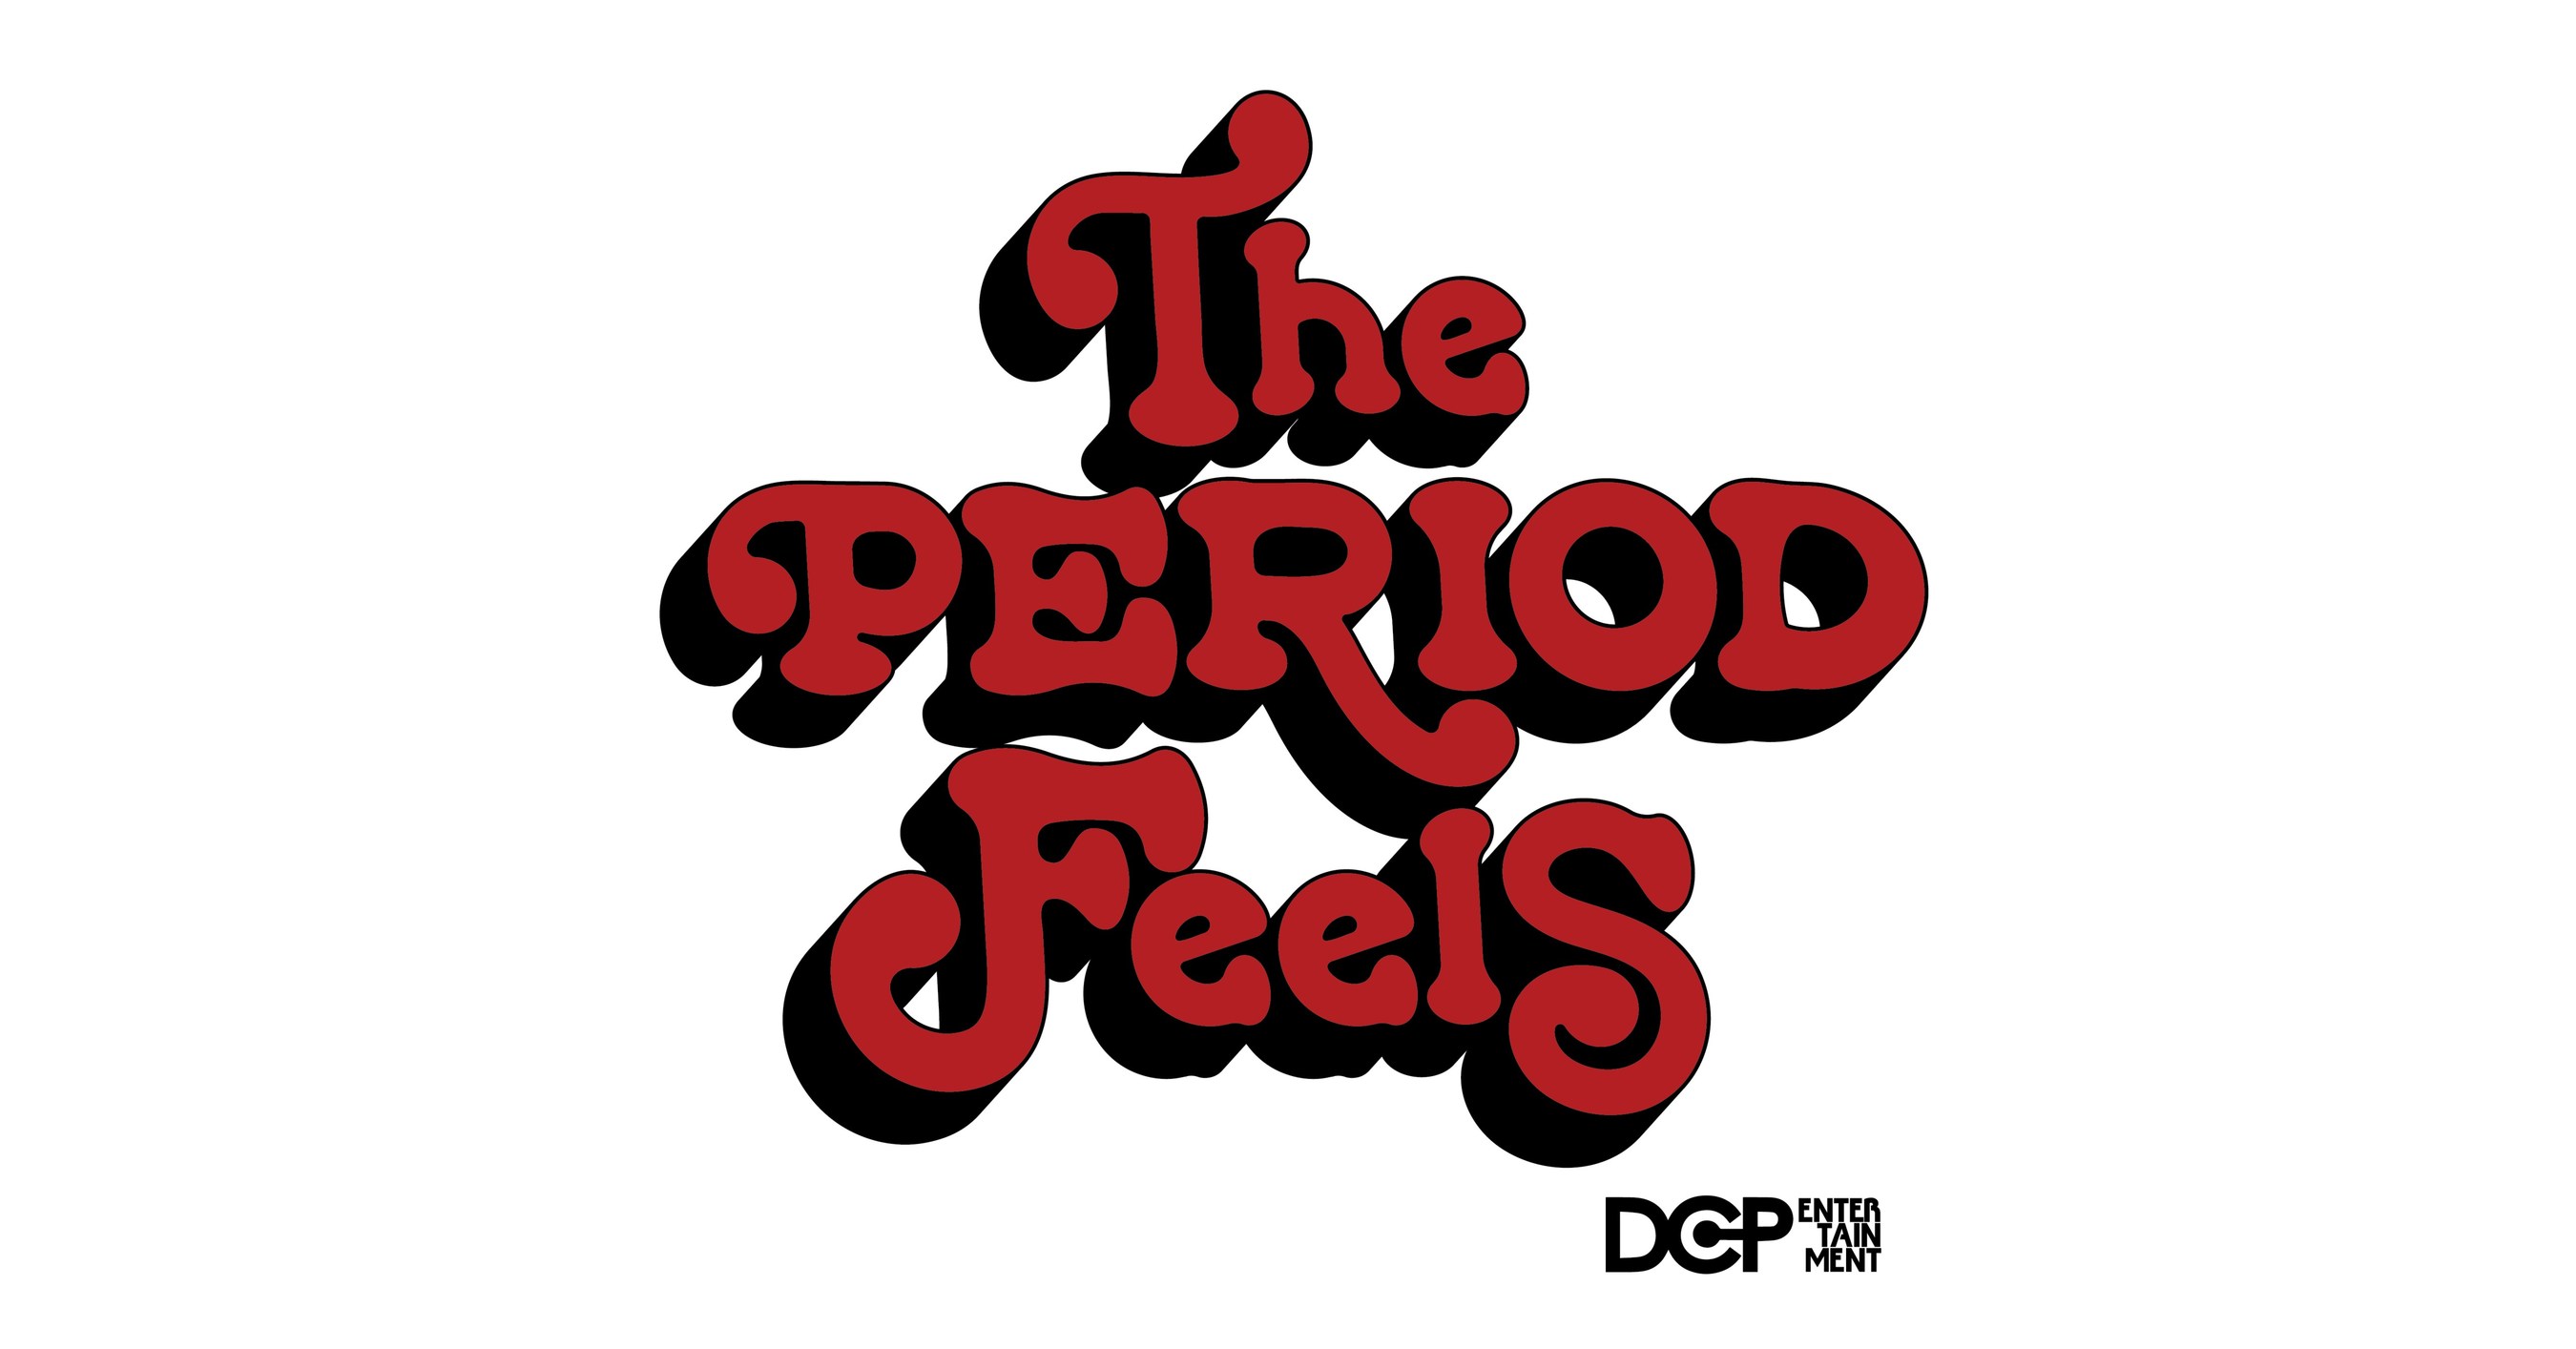 DCP Entertainment startet The Period Feels, einen Podcast, der sich auf die Förderung von Gesundheit und Wohlbefinden während der Periode konzentriert